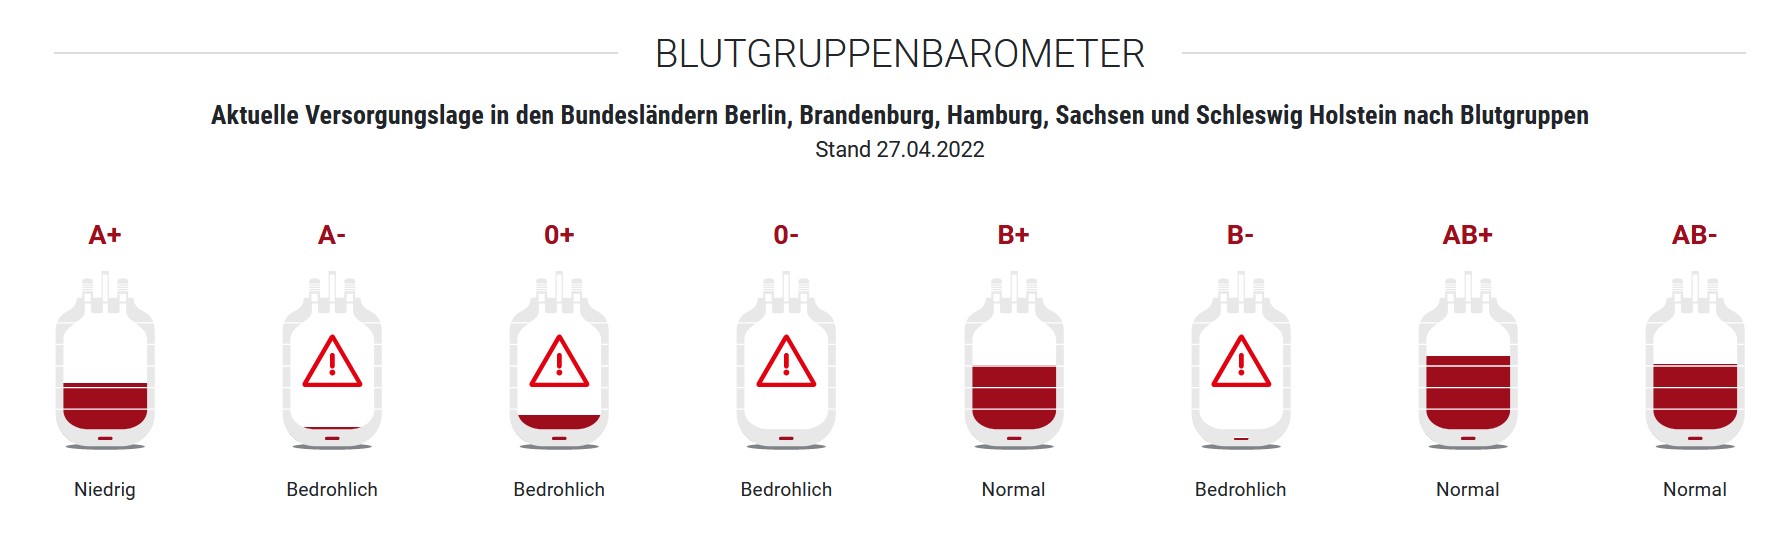 Das Blutgruppenbarometer zeigt die aktuelle Versorgungslage in den Bundesländern Berlin, Brandenburg, Hamburg, Sachsen und Schleswig Holstein nach Blutgruppen.